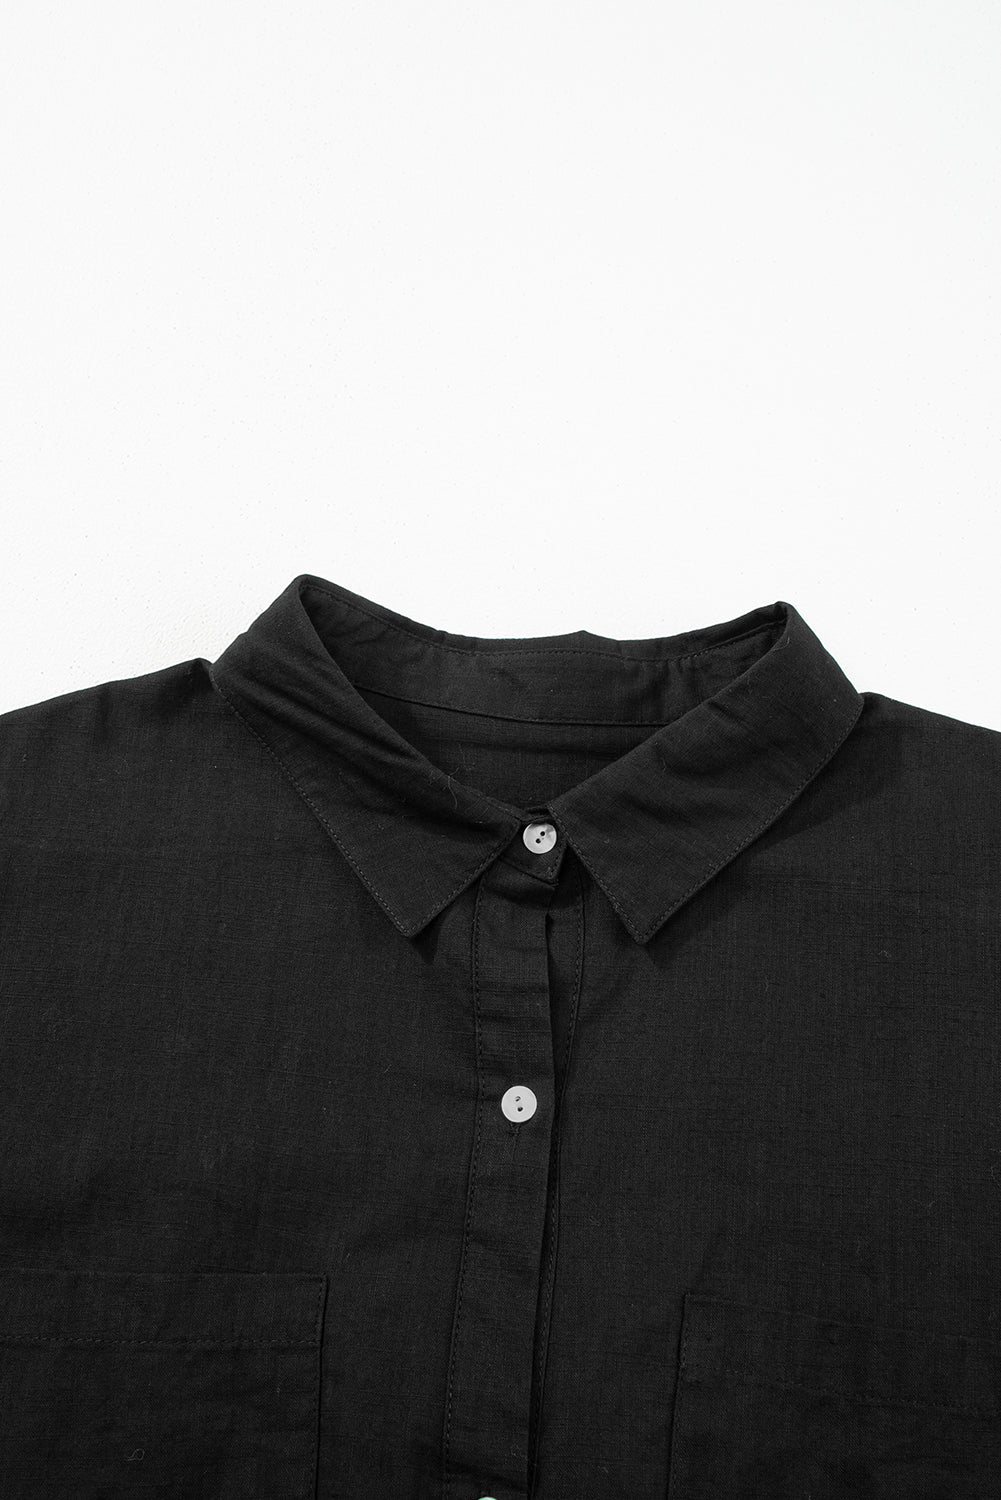 Crna lagana maska ​​za plažu u stilu košulje